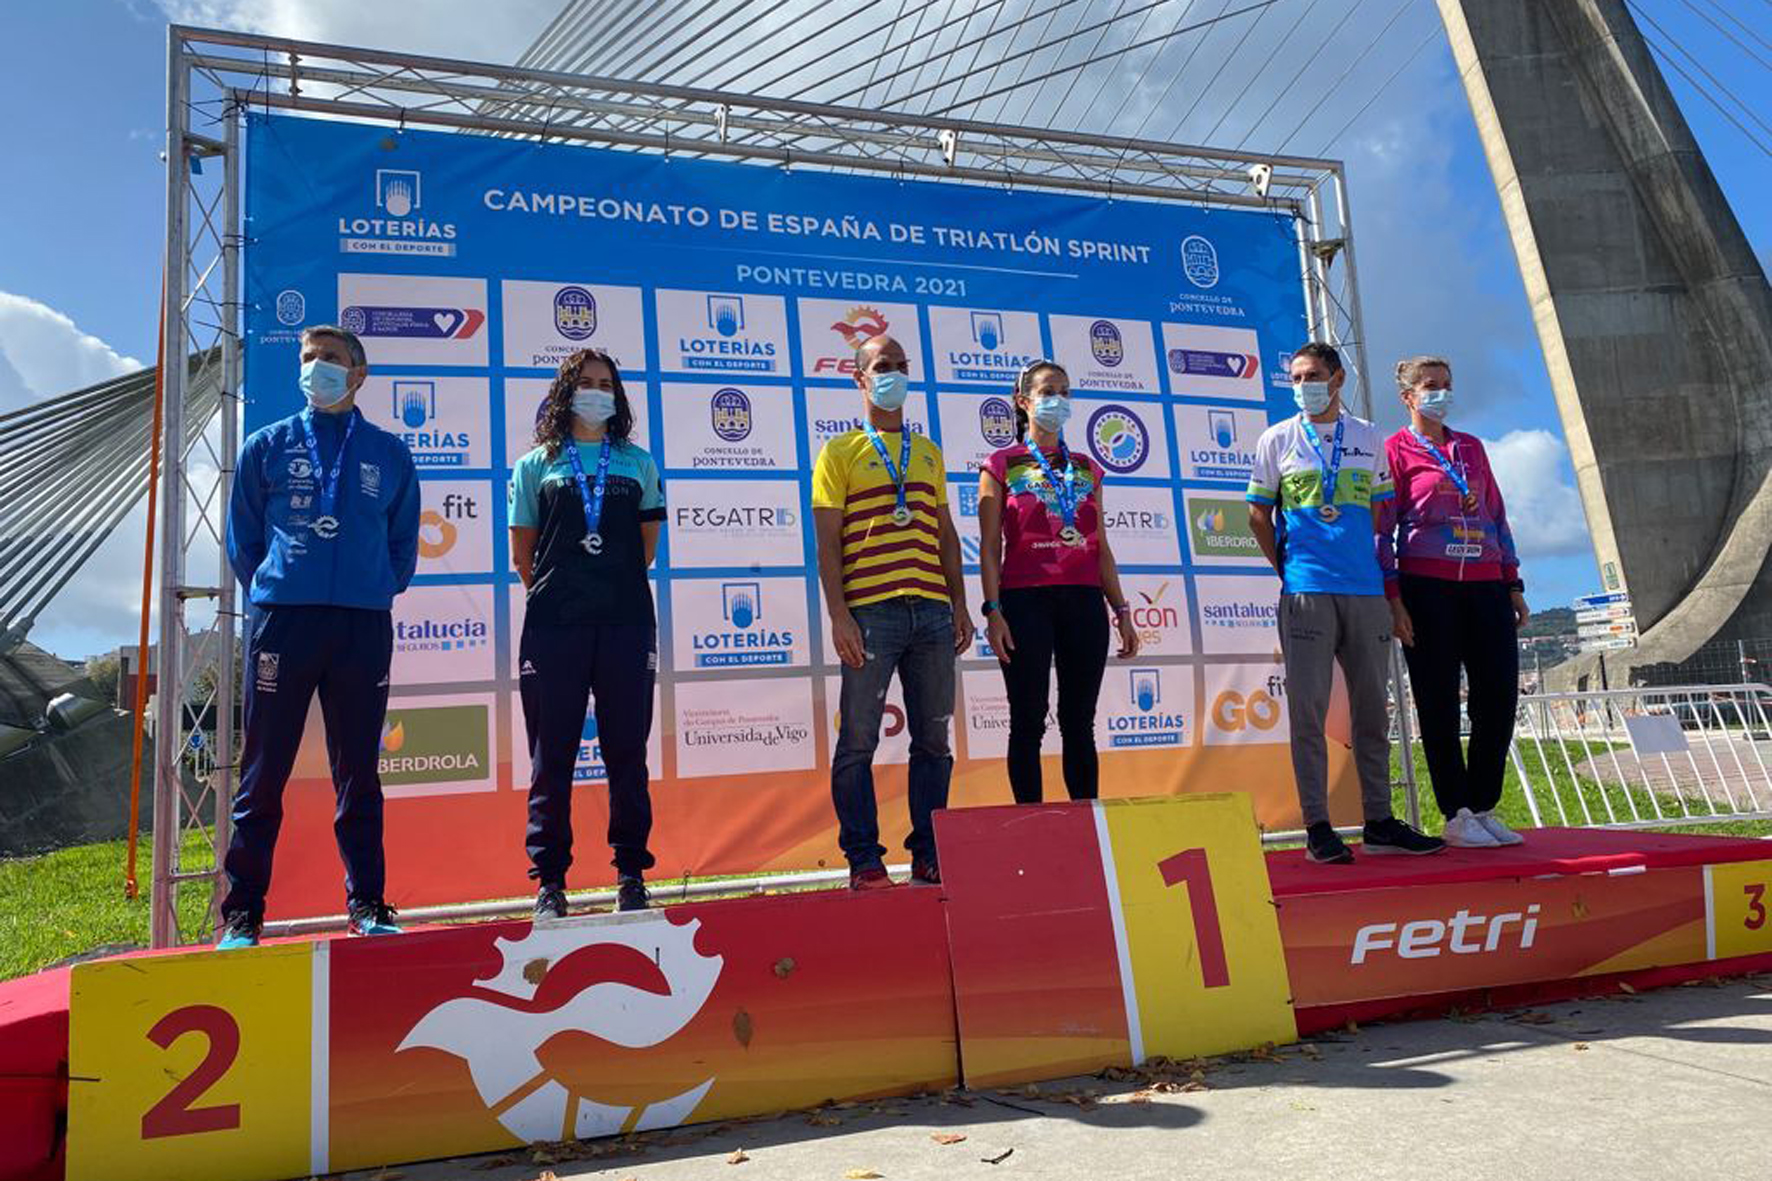 El triatleta herreño Cristian Martín Guerrero se proclama campeón de España de triatlón Sprint 40-44 años